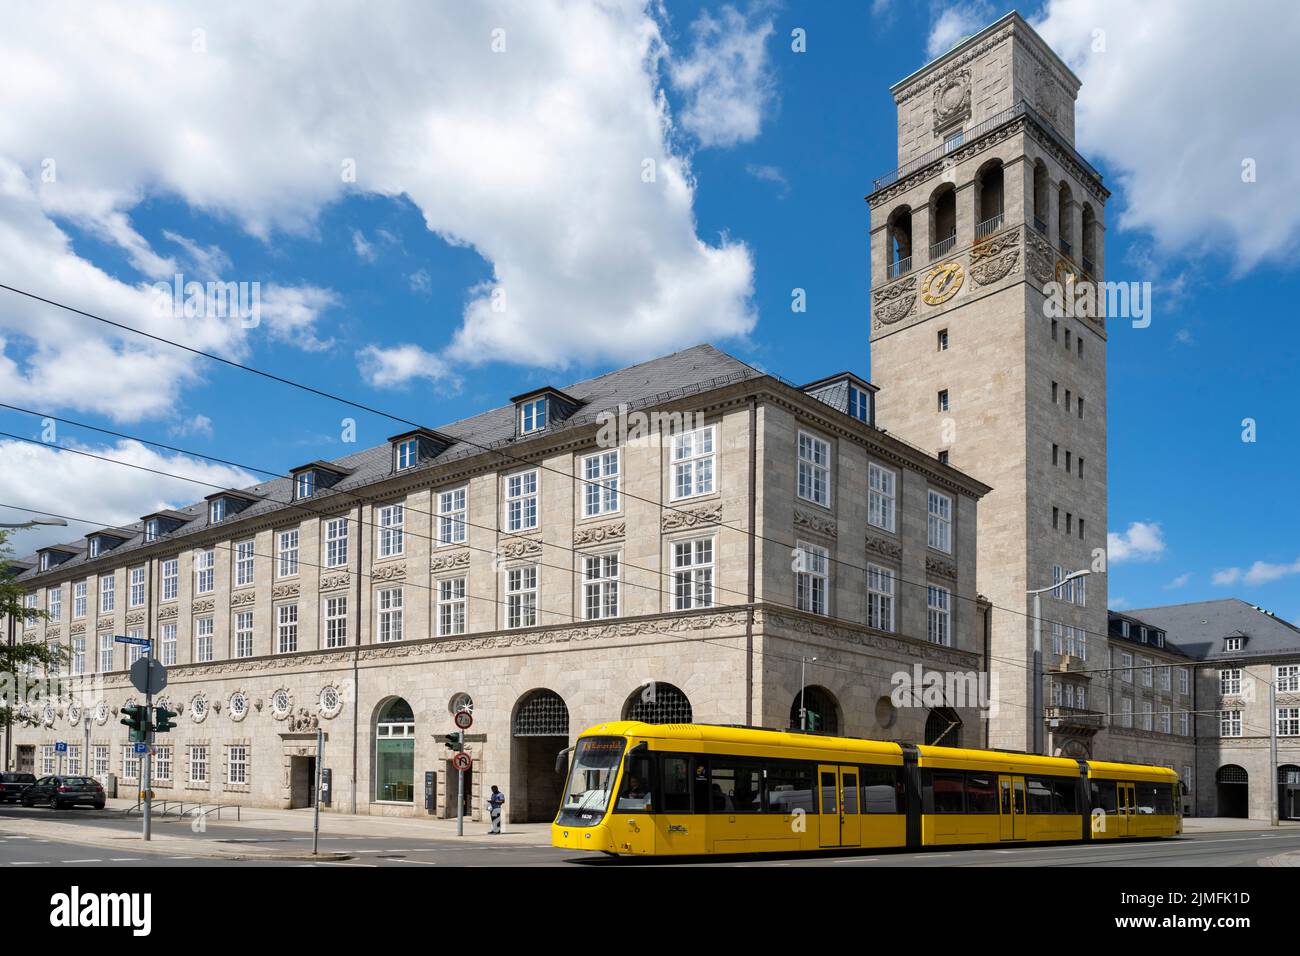 Germany, North Rhine Westphalia, Mühlheim an der Ruhr, Historisches Rathaus Stock Photo